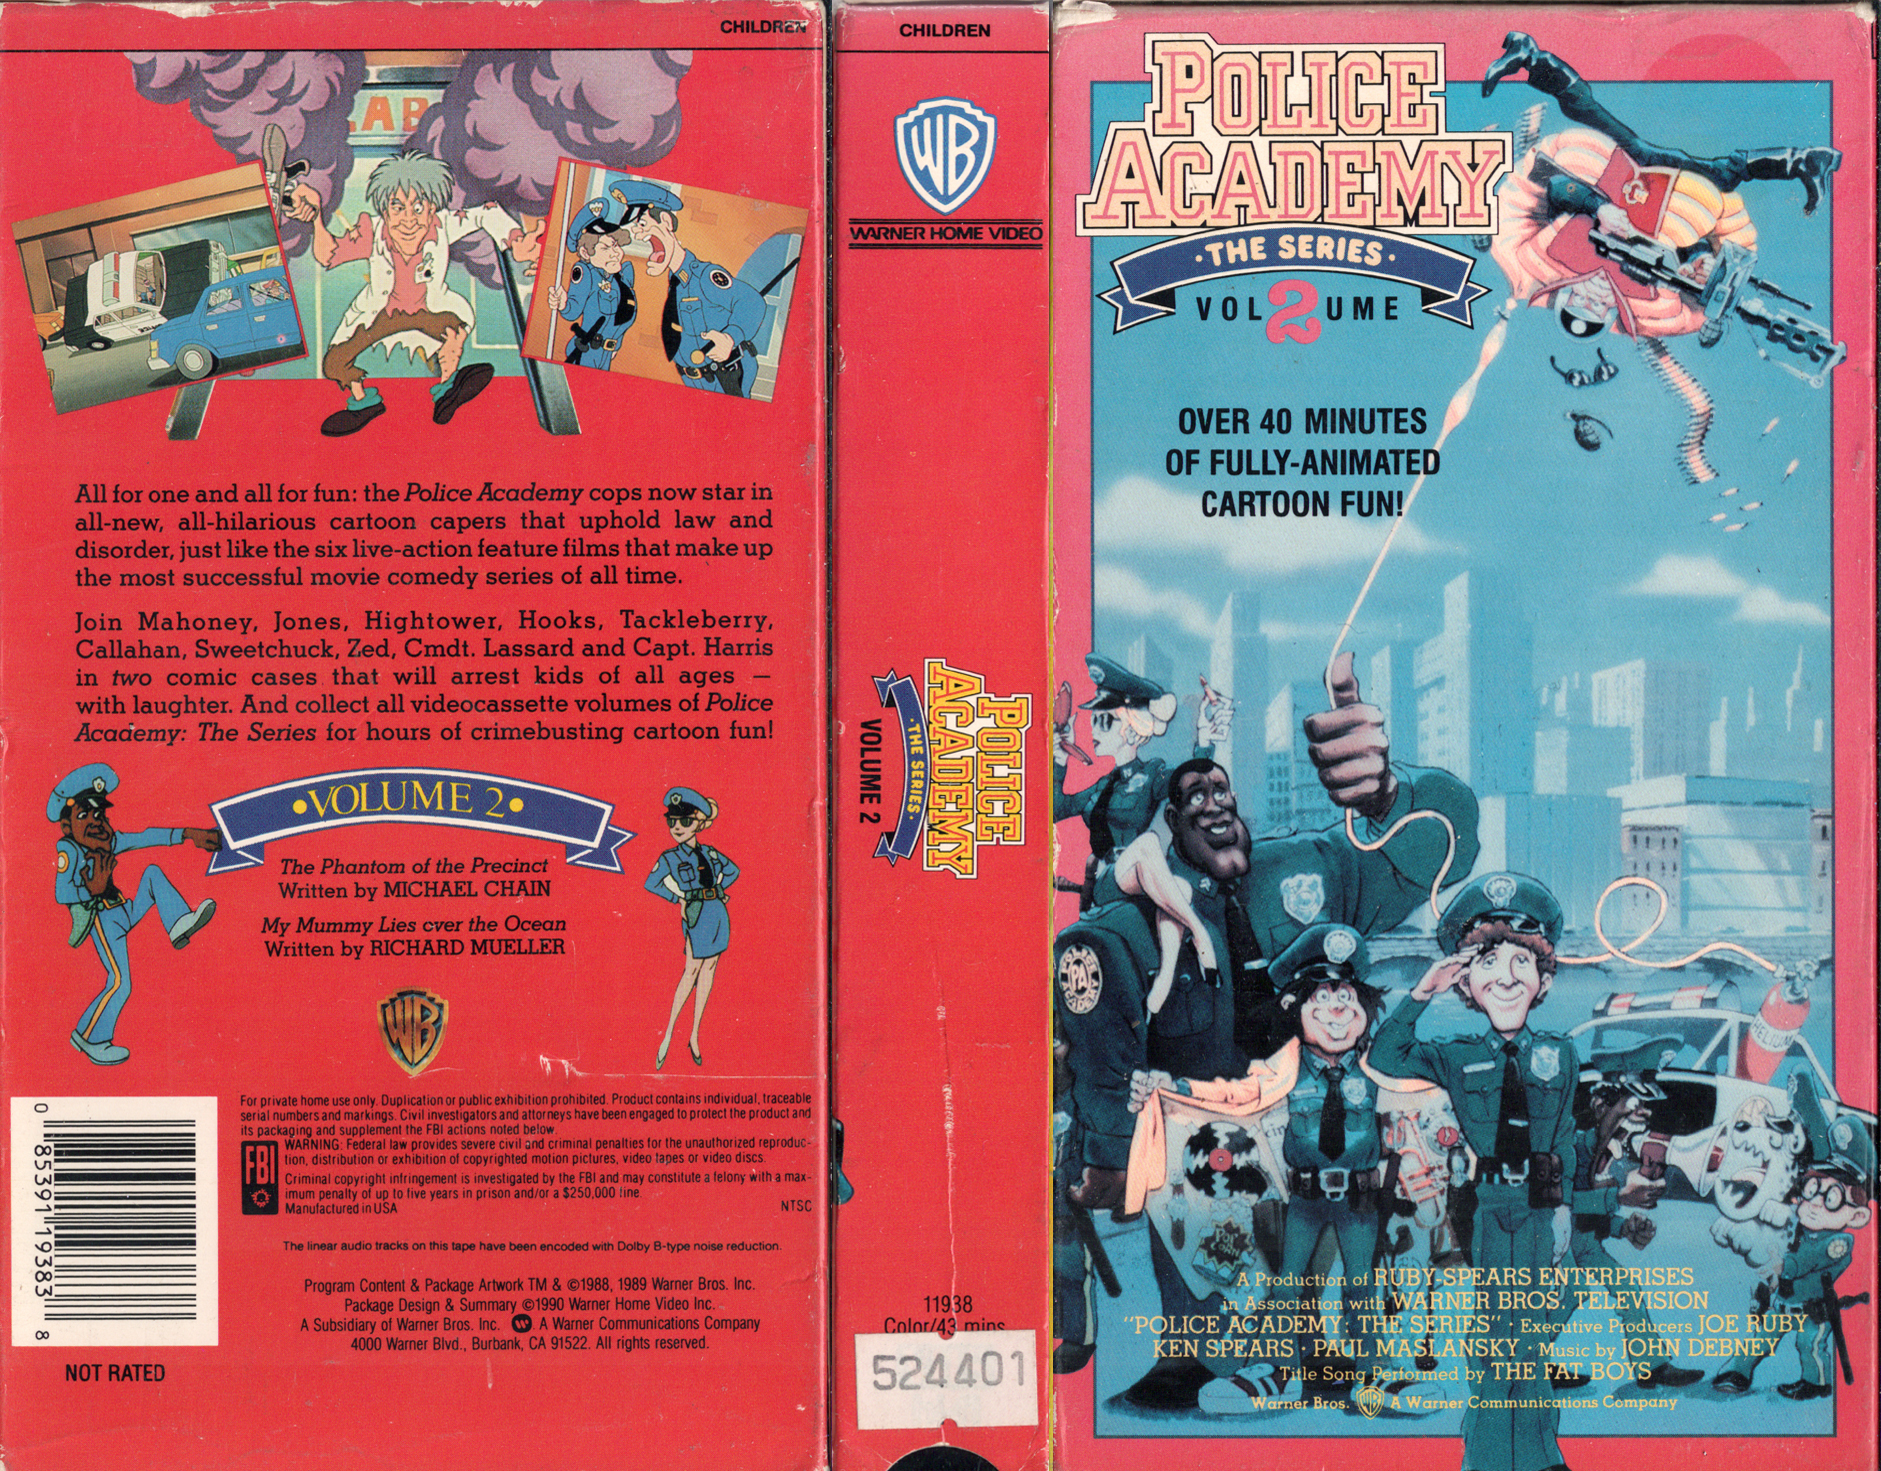 RetroDaze - VHS Covers